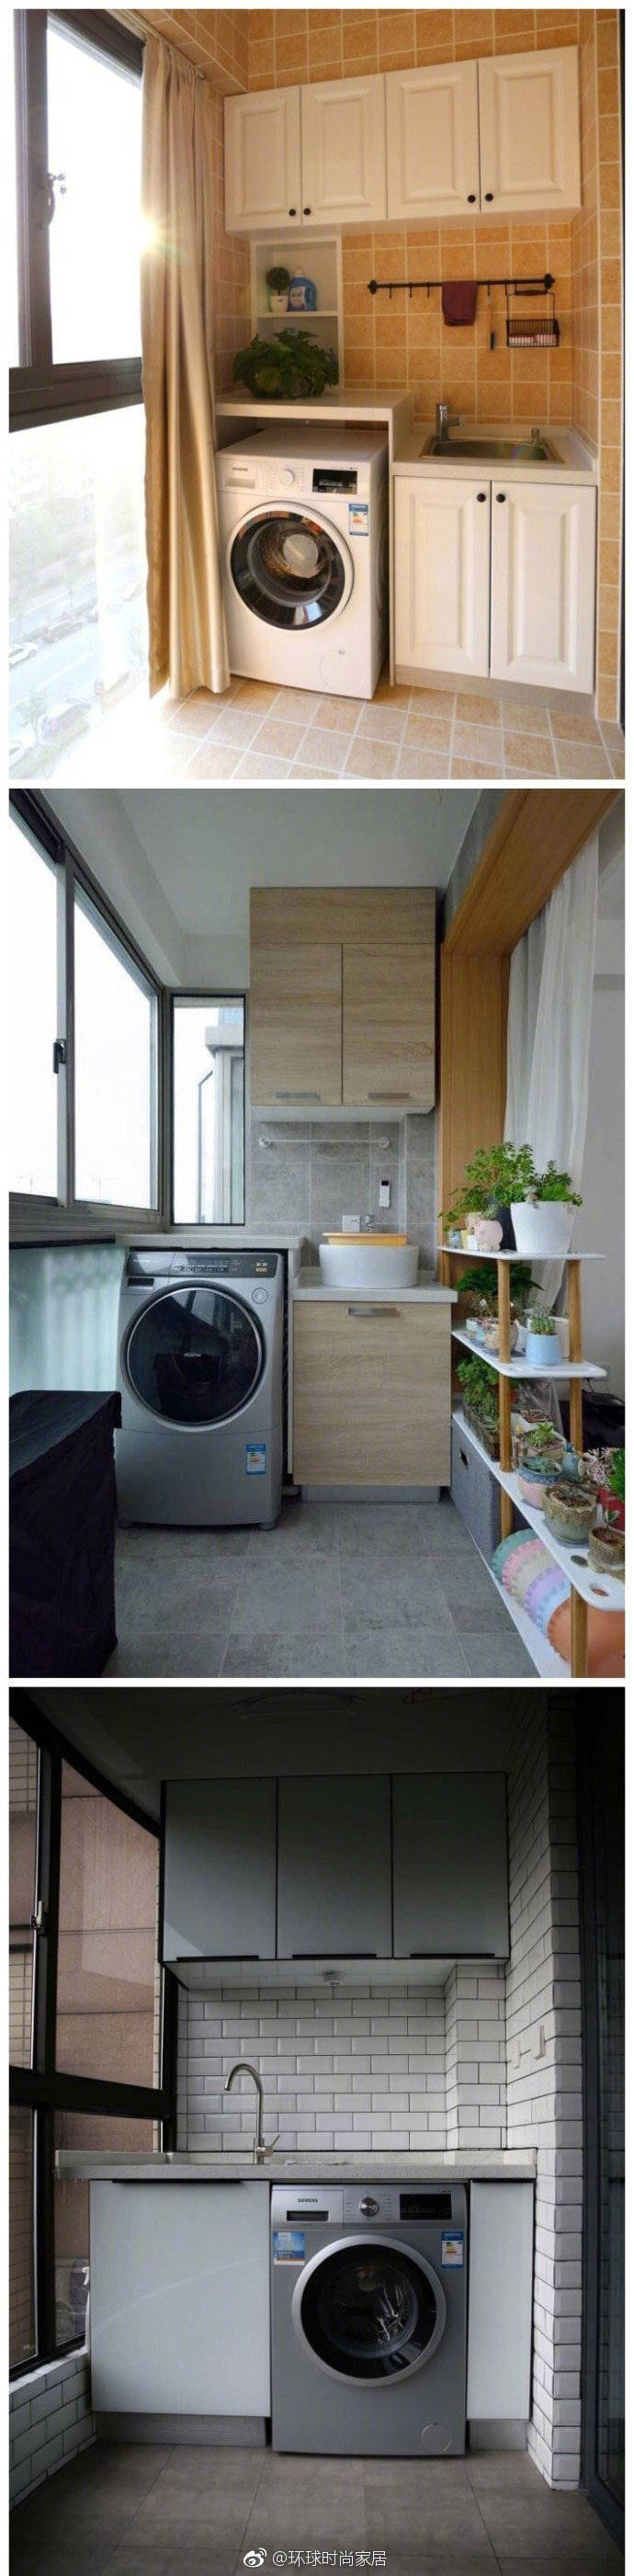 阳台洗衣机这样设计,洗晒都方便,还能增加储物空间哦!